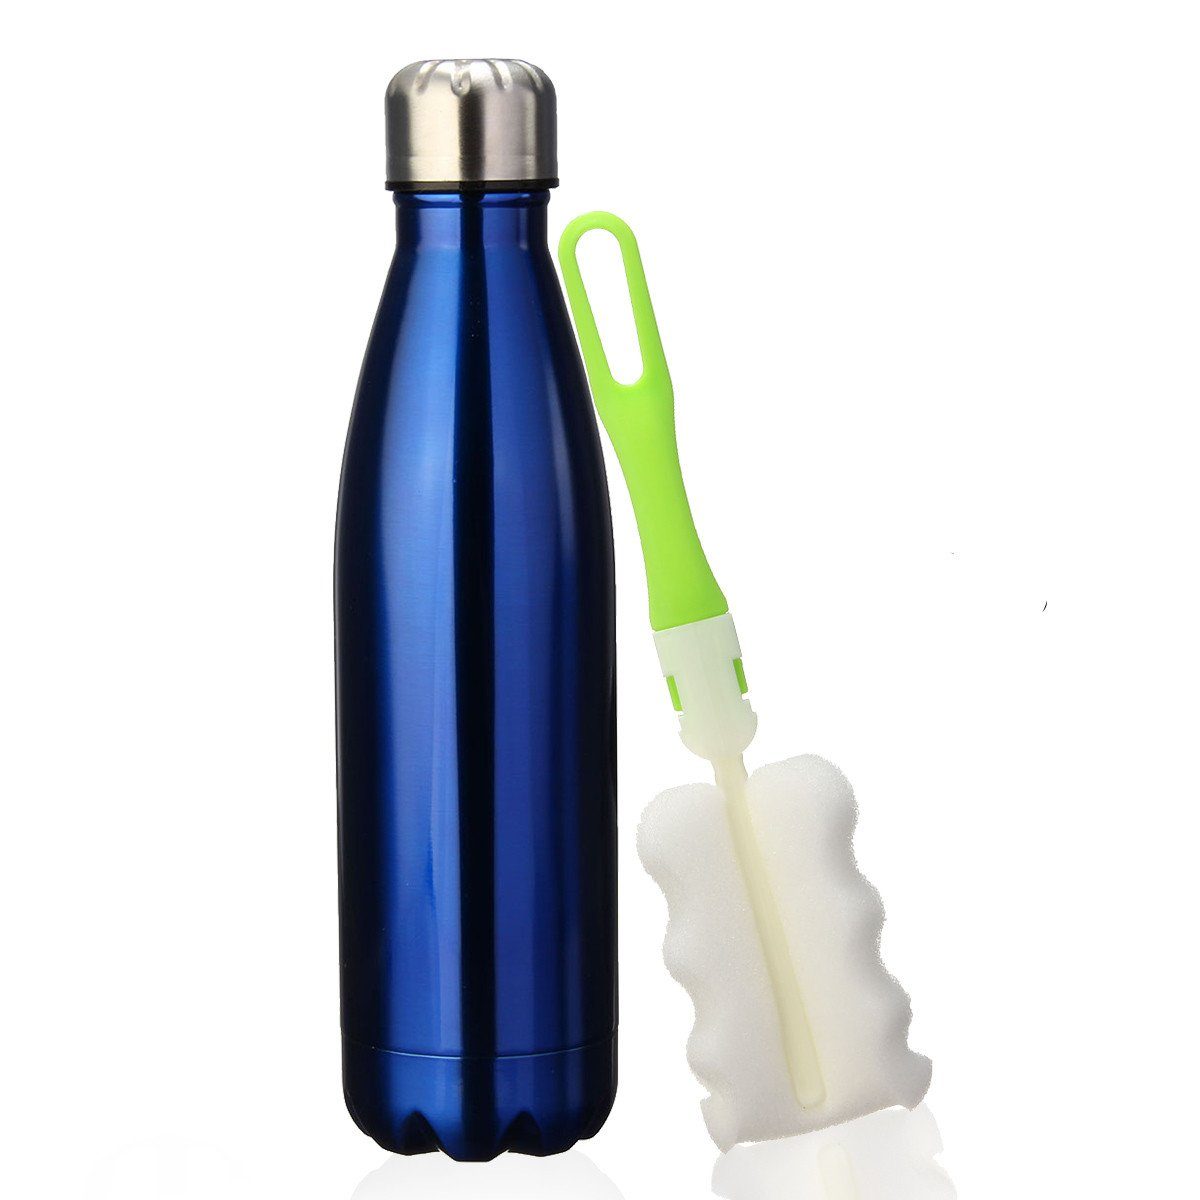 Insma Thermoflasche 500ml doppelwandige Isolierflasche Trinkflasche, mit auslaufsicherem Deckel und Bürste Dunkelblau | Thermoflaschen